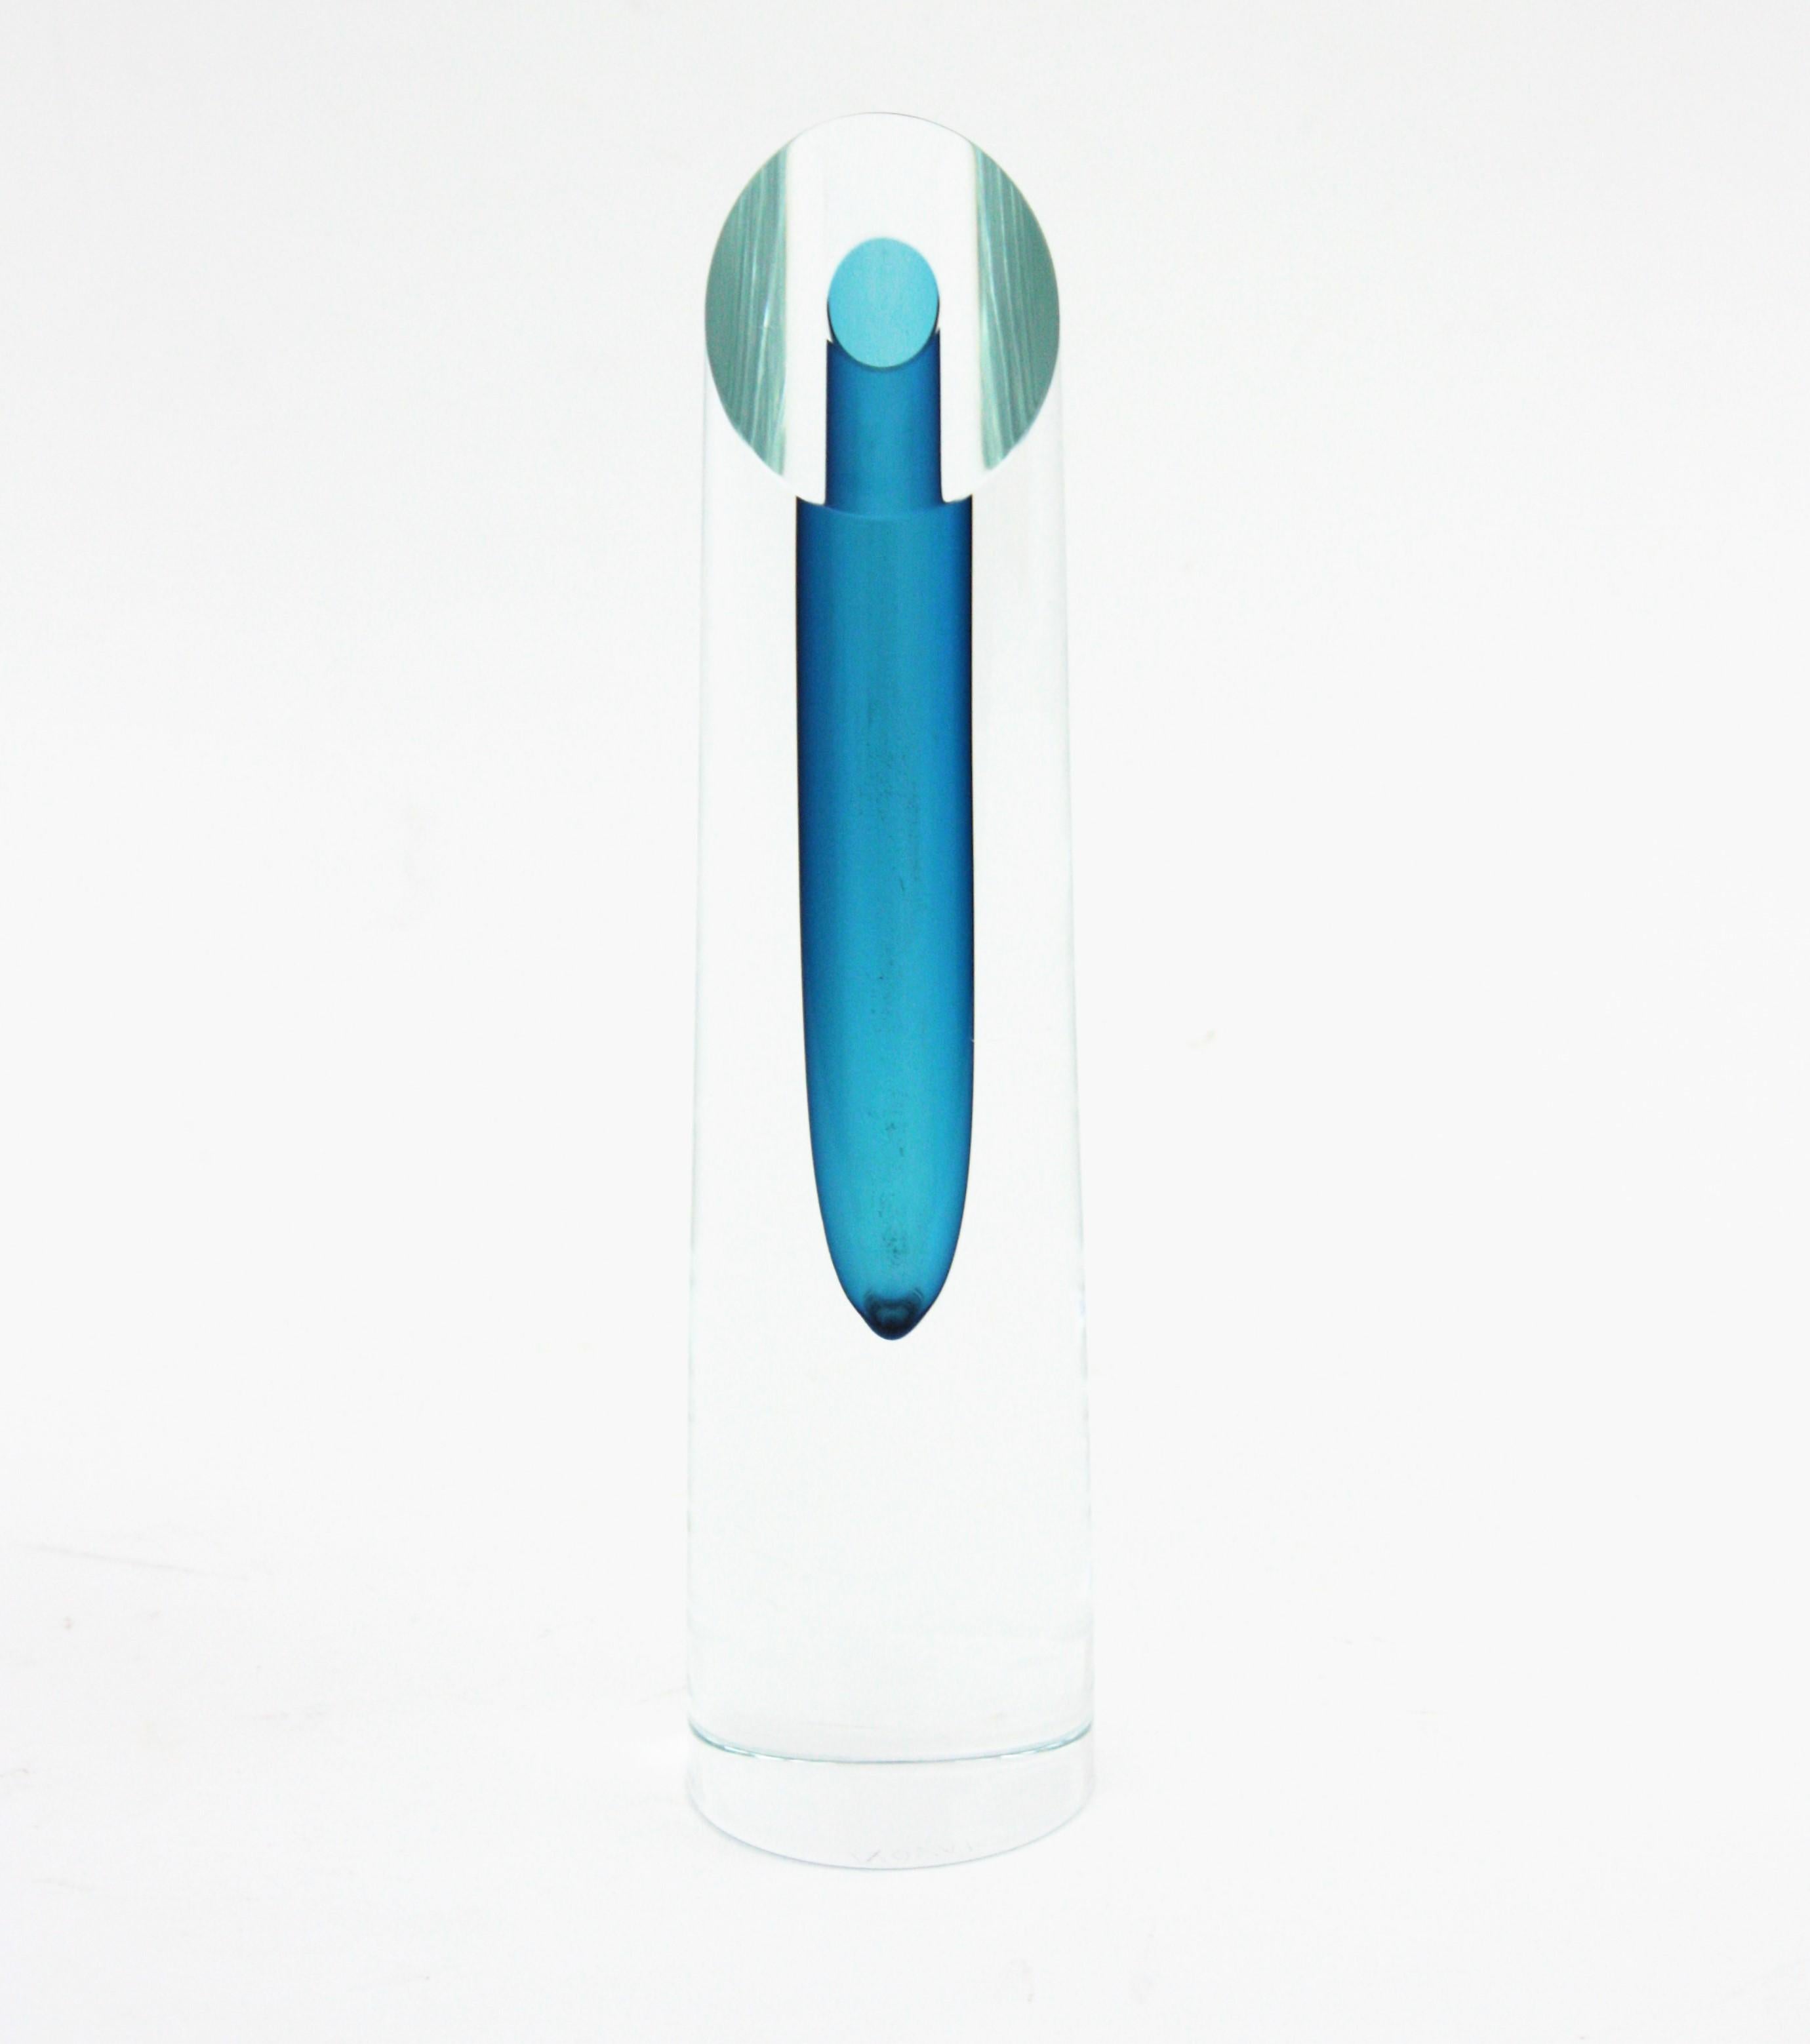 Skulpturale Blockvase Sommerso aus blauem und klarem Glas von Bretislav Novak,  Tschechische Republik, 1950er Jahre.
Leuchtend blaues Glas, das mit der Sommerso-Technik in Kreppglas getaucht wurde.
Facettierte Spitze und elegante Form.
Wunderbar als